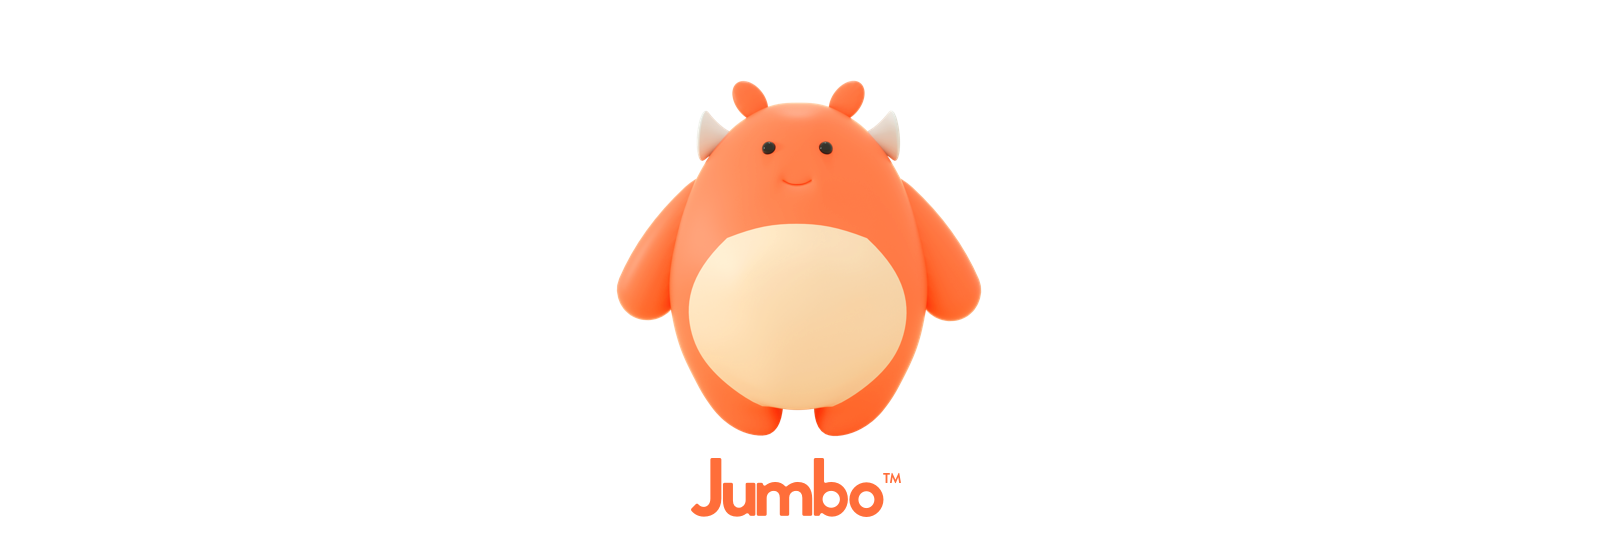 jumbo_boy